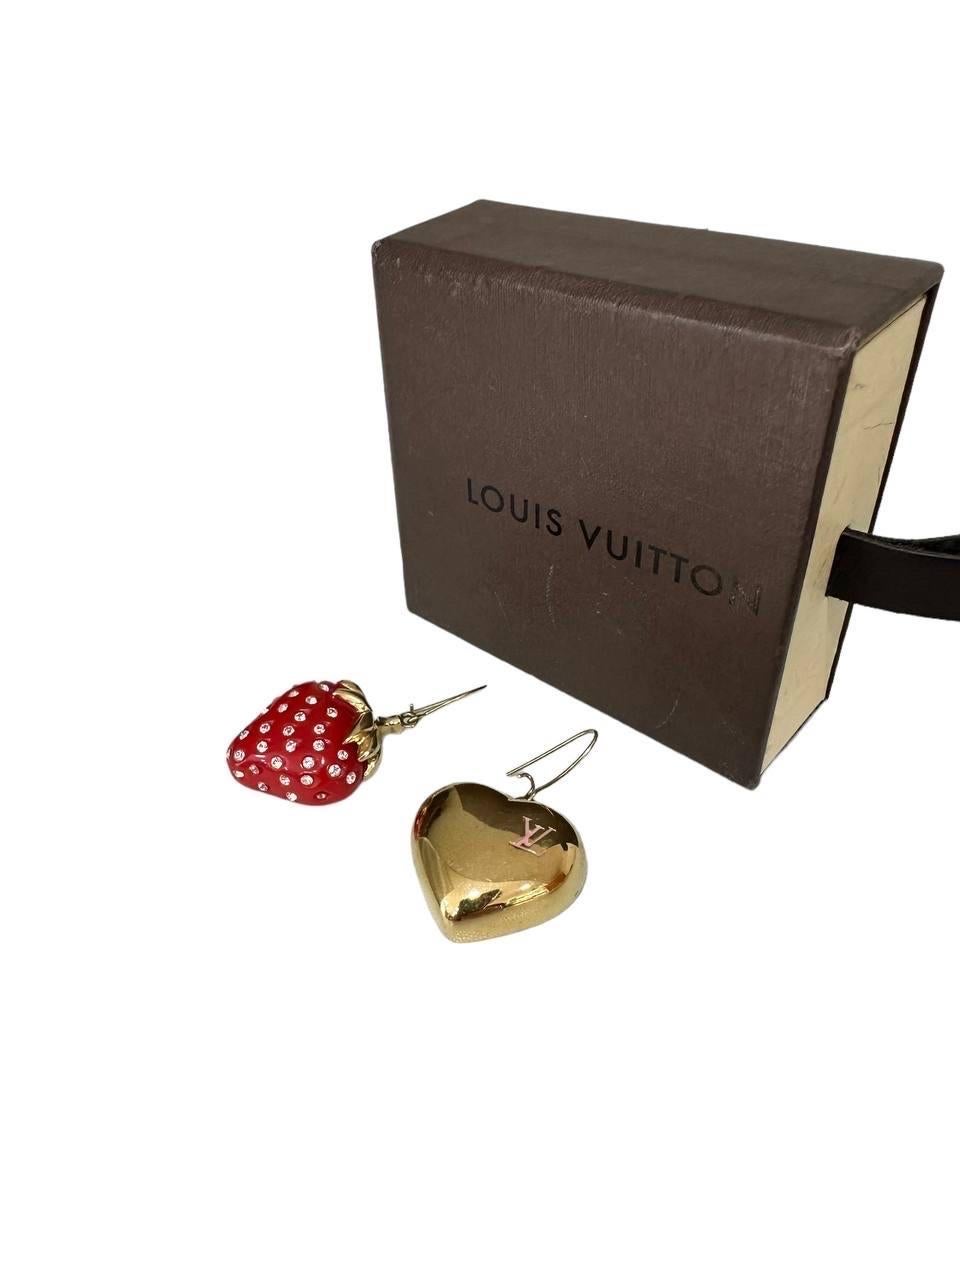 Orecchini firmati Louis Vuitton, realizzati in metallo color oro. Ils sont caractérisés par une forme a cuore d'un côté et une forme fragola ricoperta da strass de l'autre. Ils se présentent en bon état, avec une légère usure au niveau du dos.